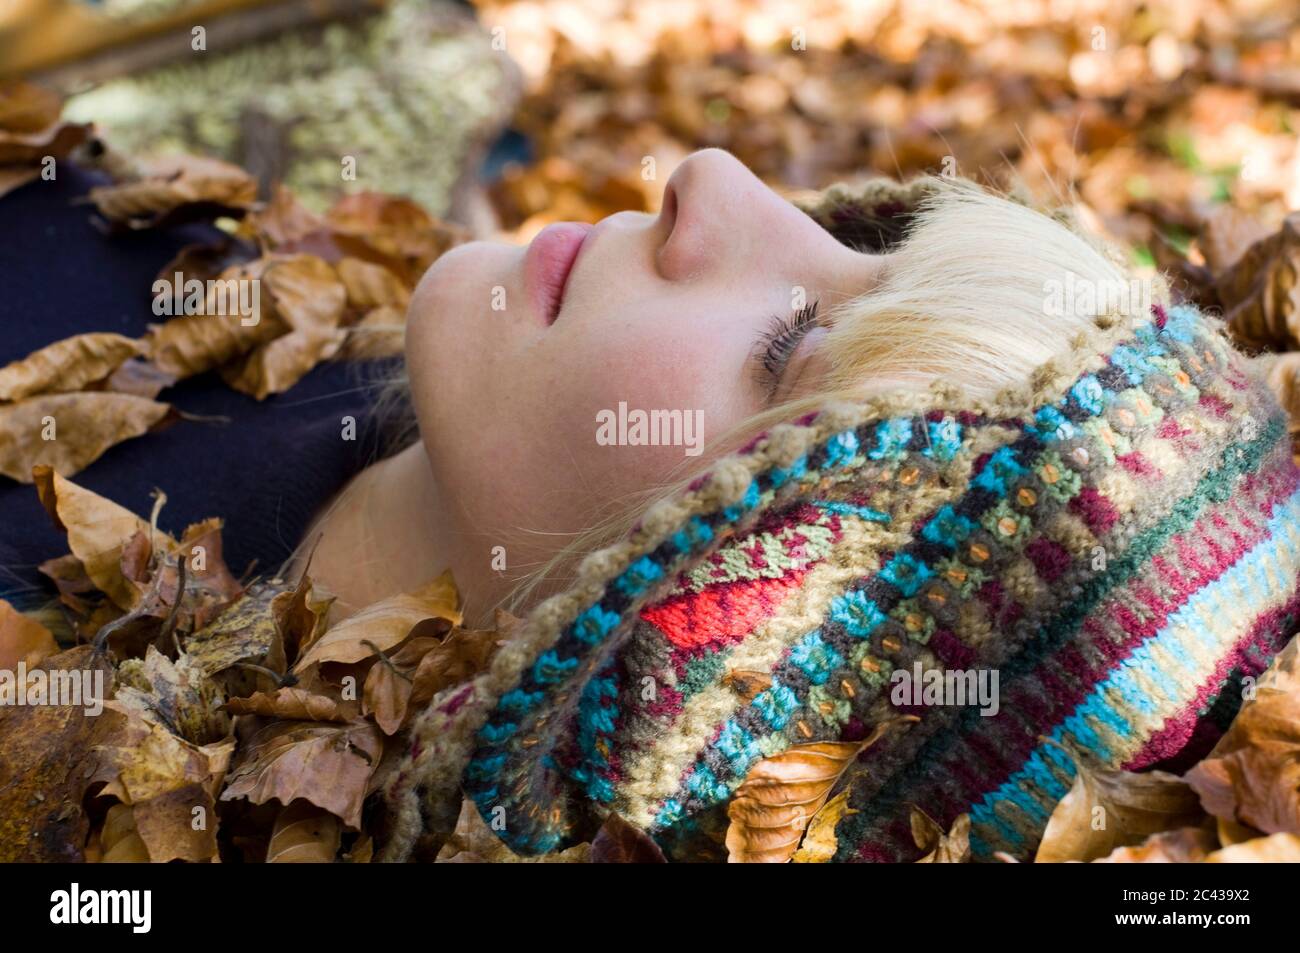 La jeune femme se trouve dans les feuilles d'automne, Flaucher, Munich, Bavière, Allemagne Banque D'Images